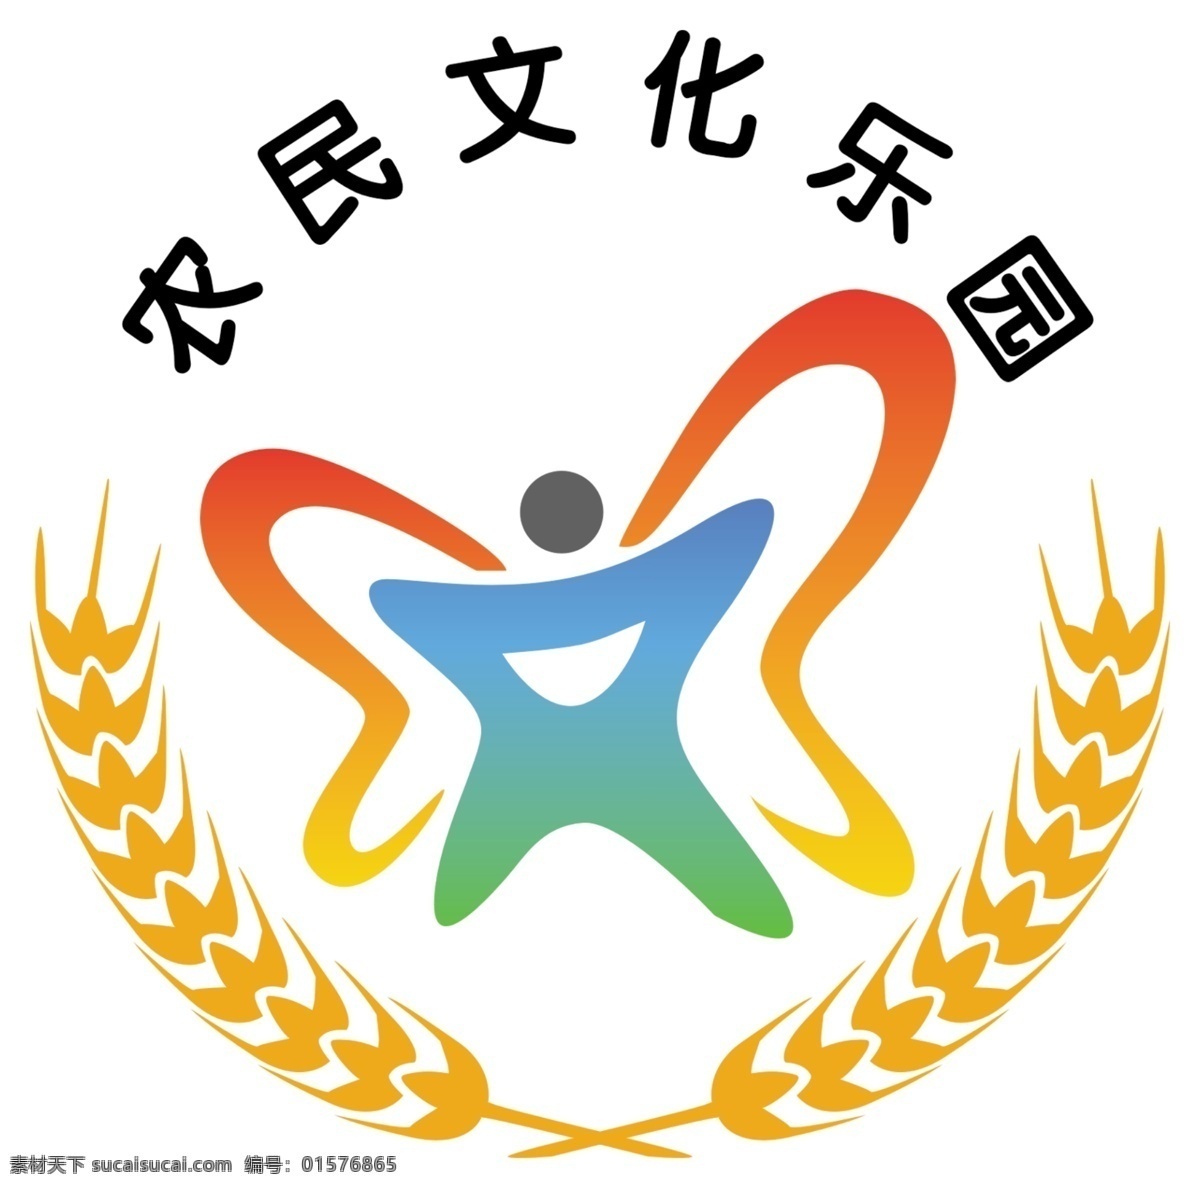 农民文化乐园 农民 文化 乐园 标志 log 农民文化 psd格式